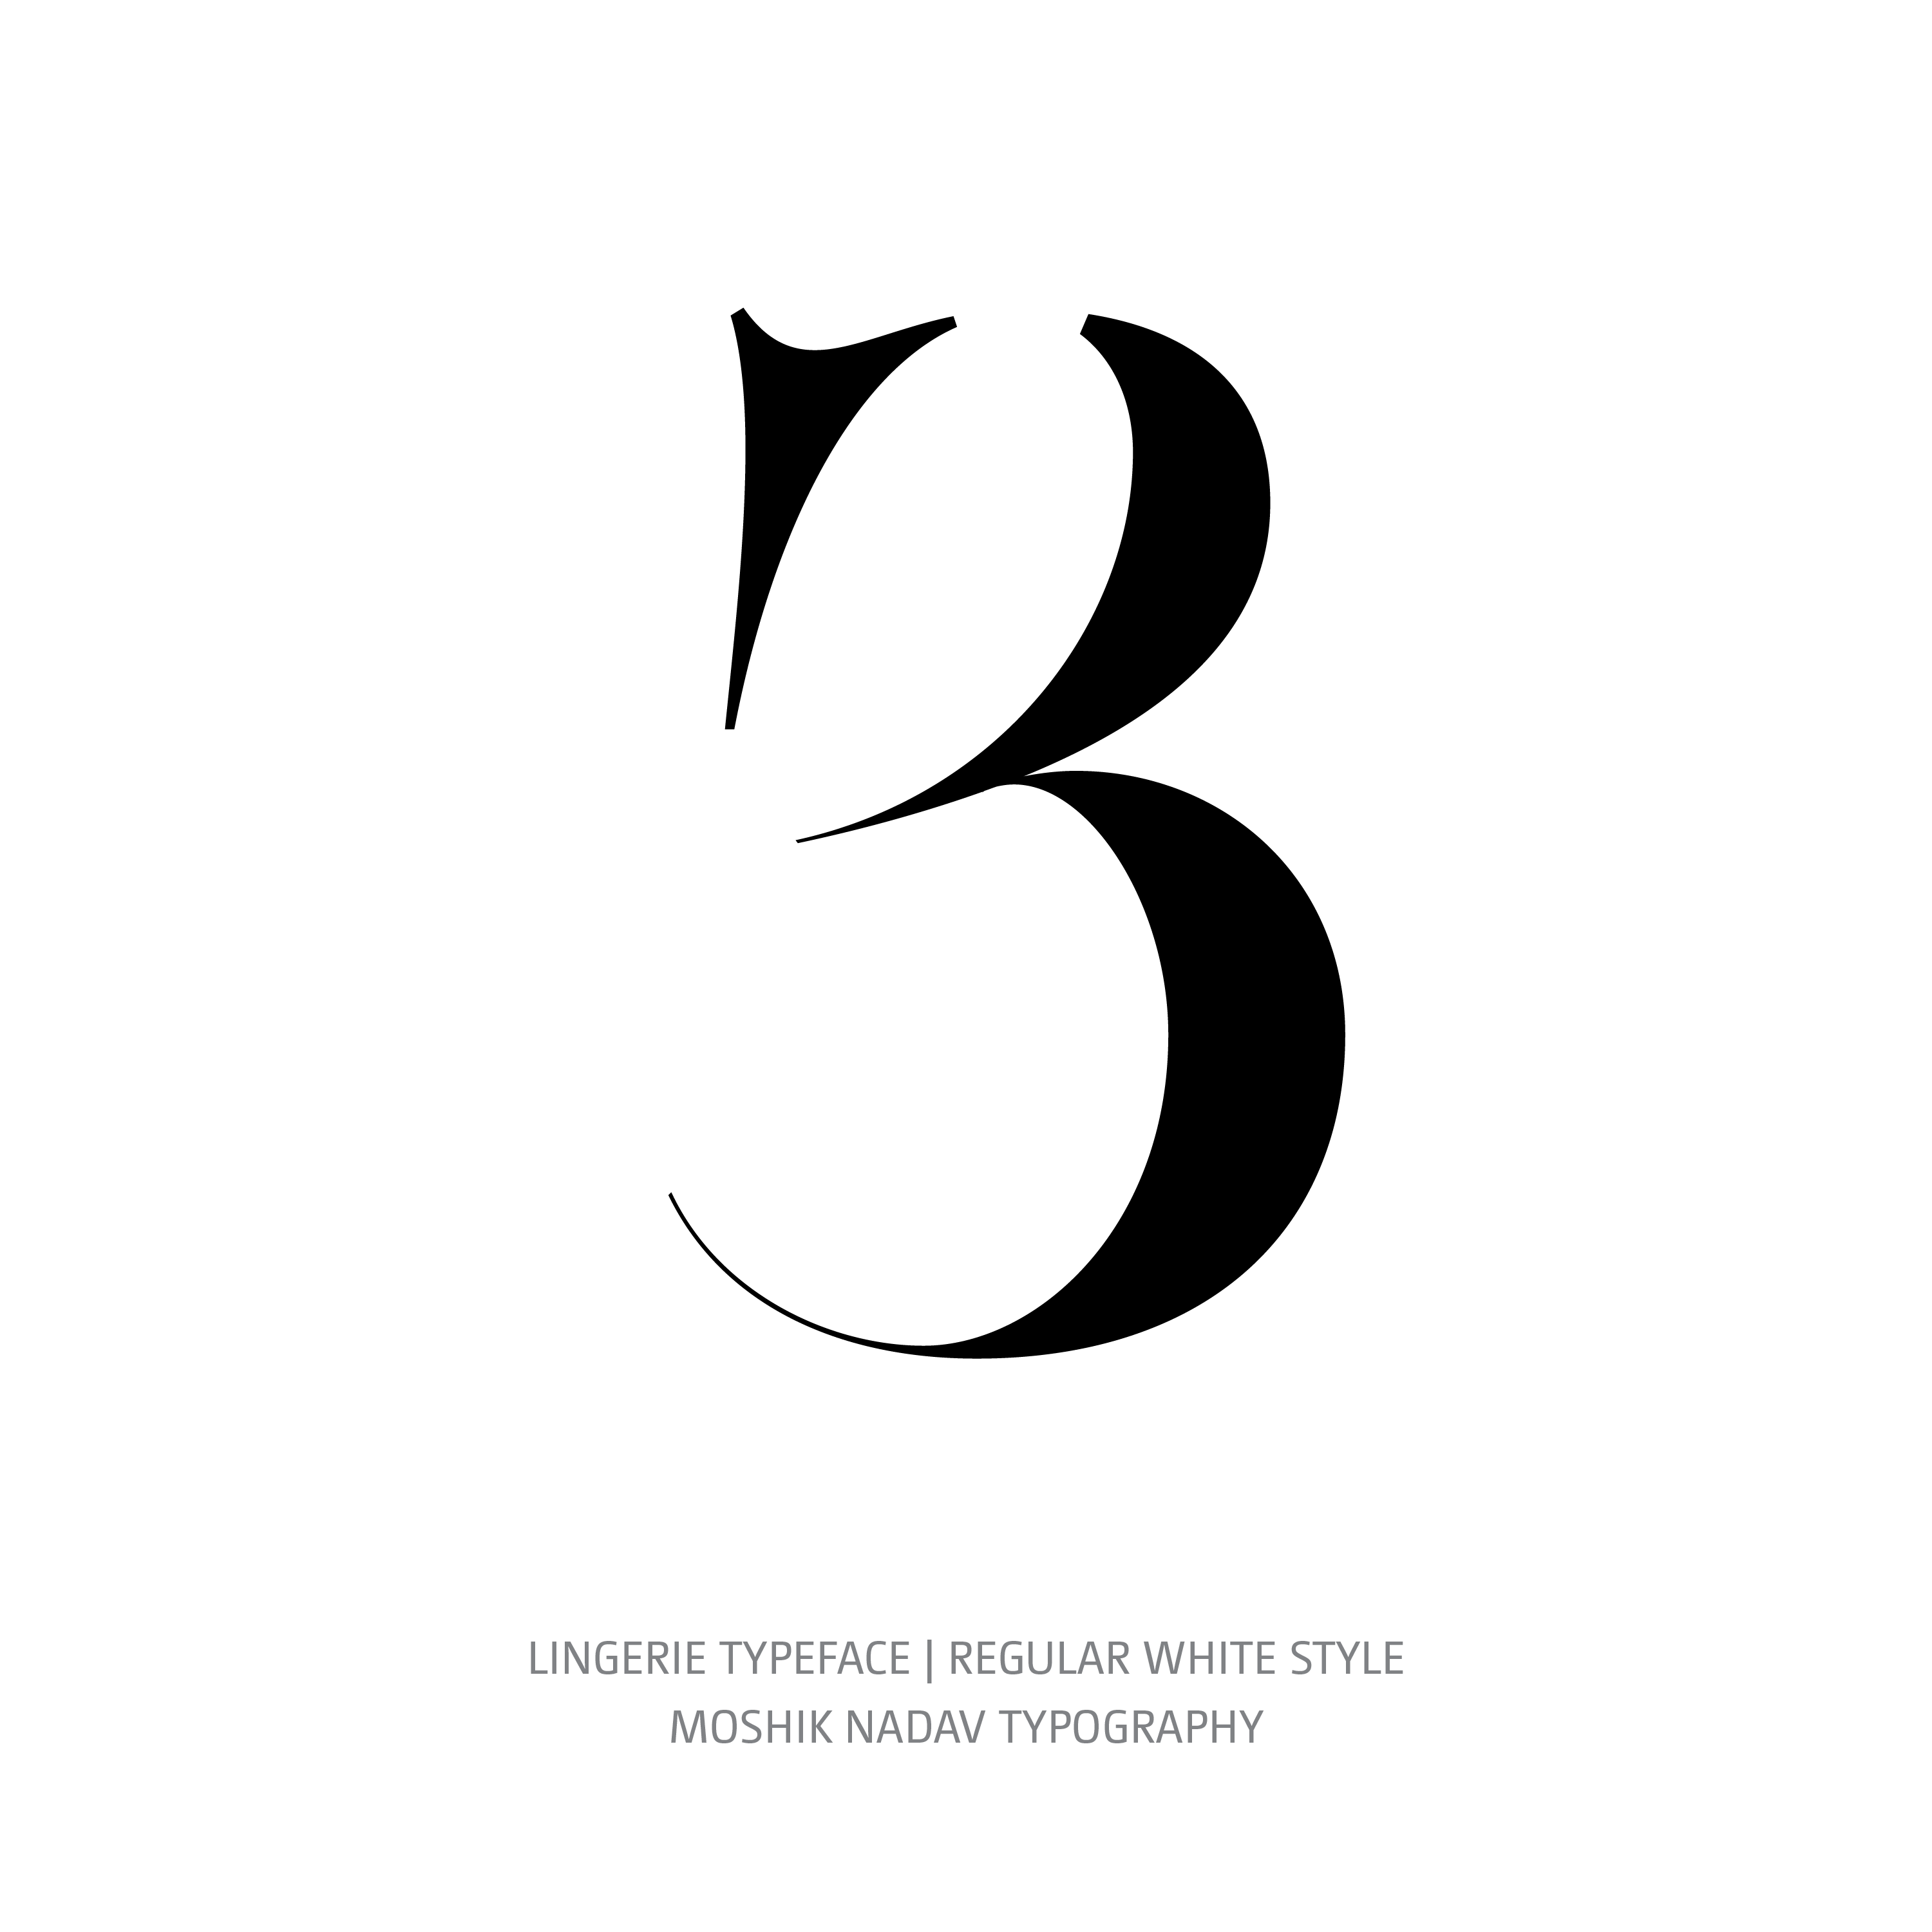 Lingerie Typeface Regular White 3